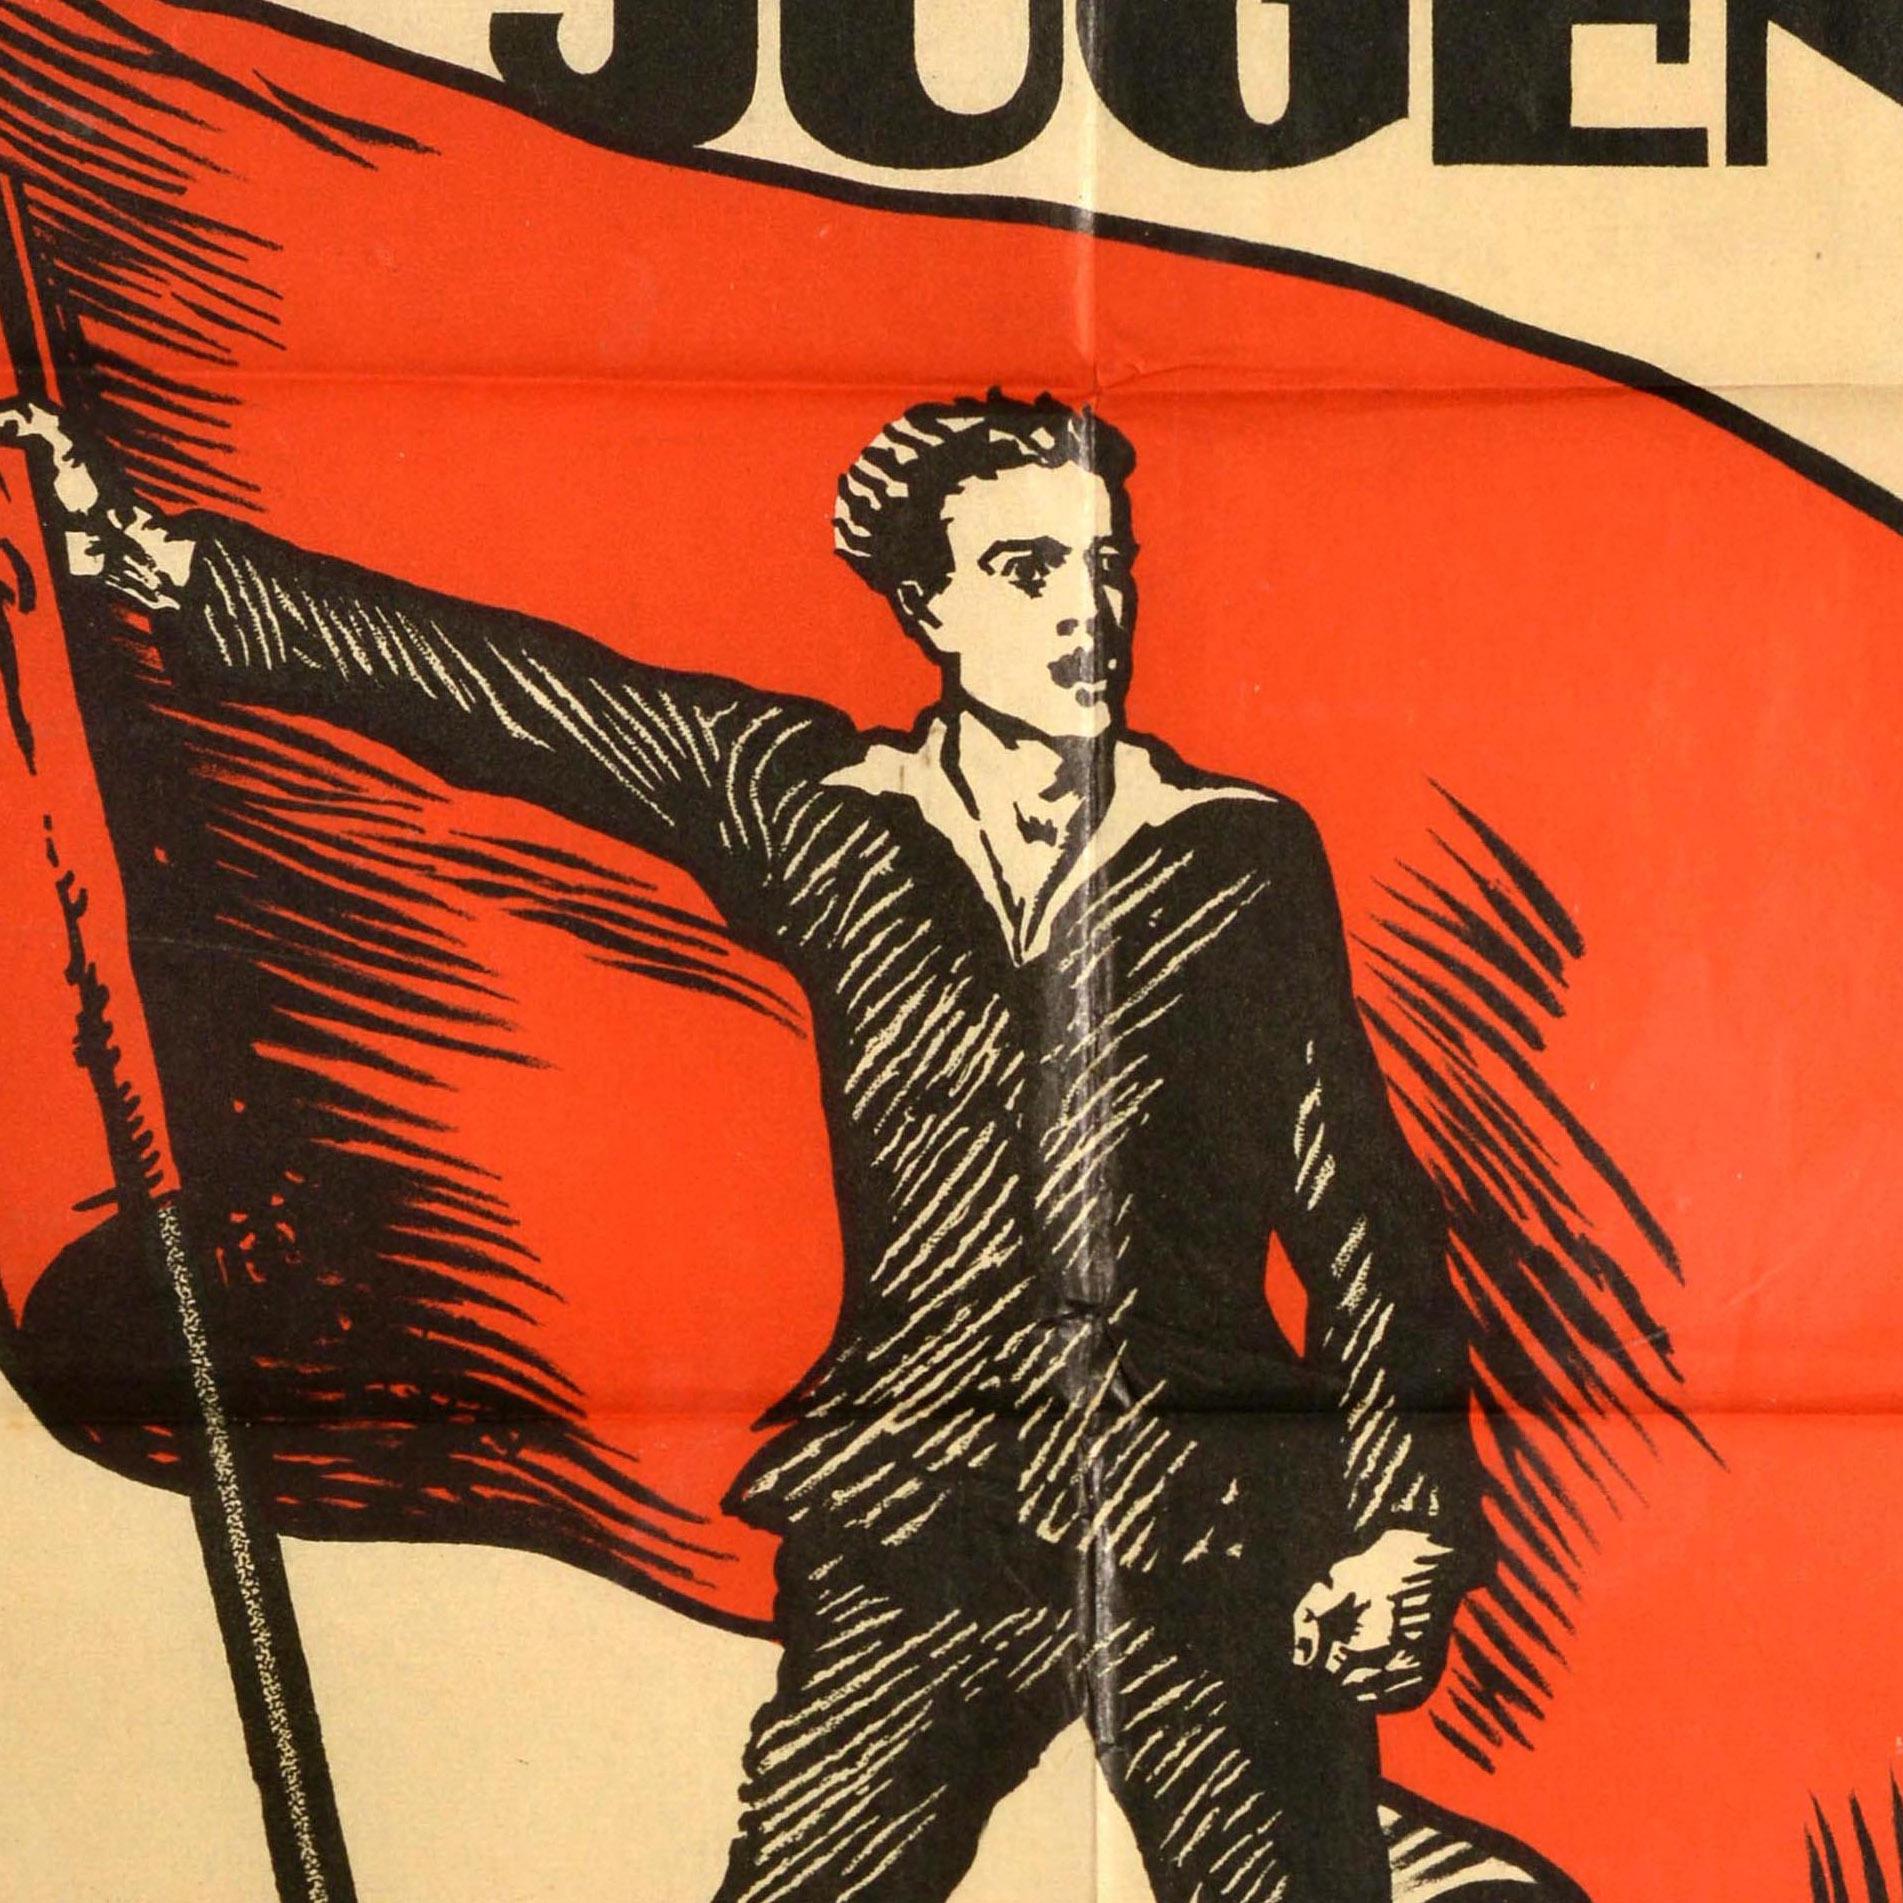 Original-Propagandaplakat - Arbeiter Jugend hinein in die Arbeiter Jugendvereine - mit der Illustration eines jungen Mannes, der mit geballter Faust ein großes rotes Transparent schwenkt, darüber und darunter der fette Titeltext. Herausgegeben vom